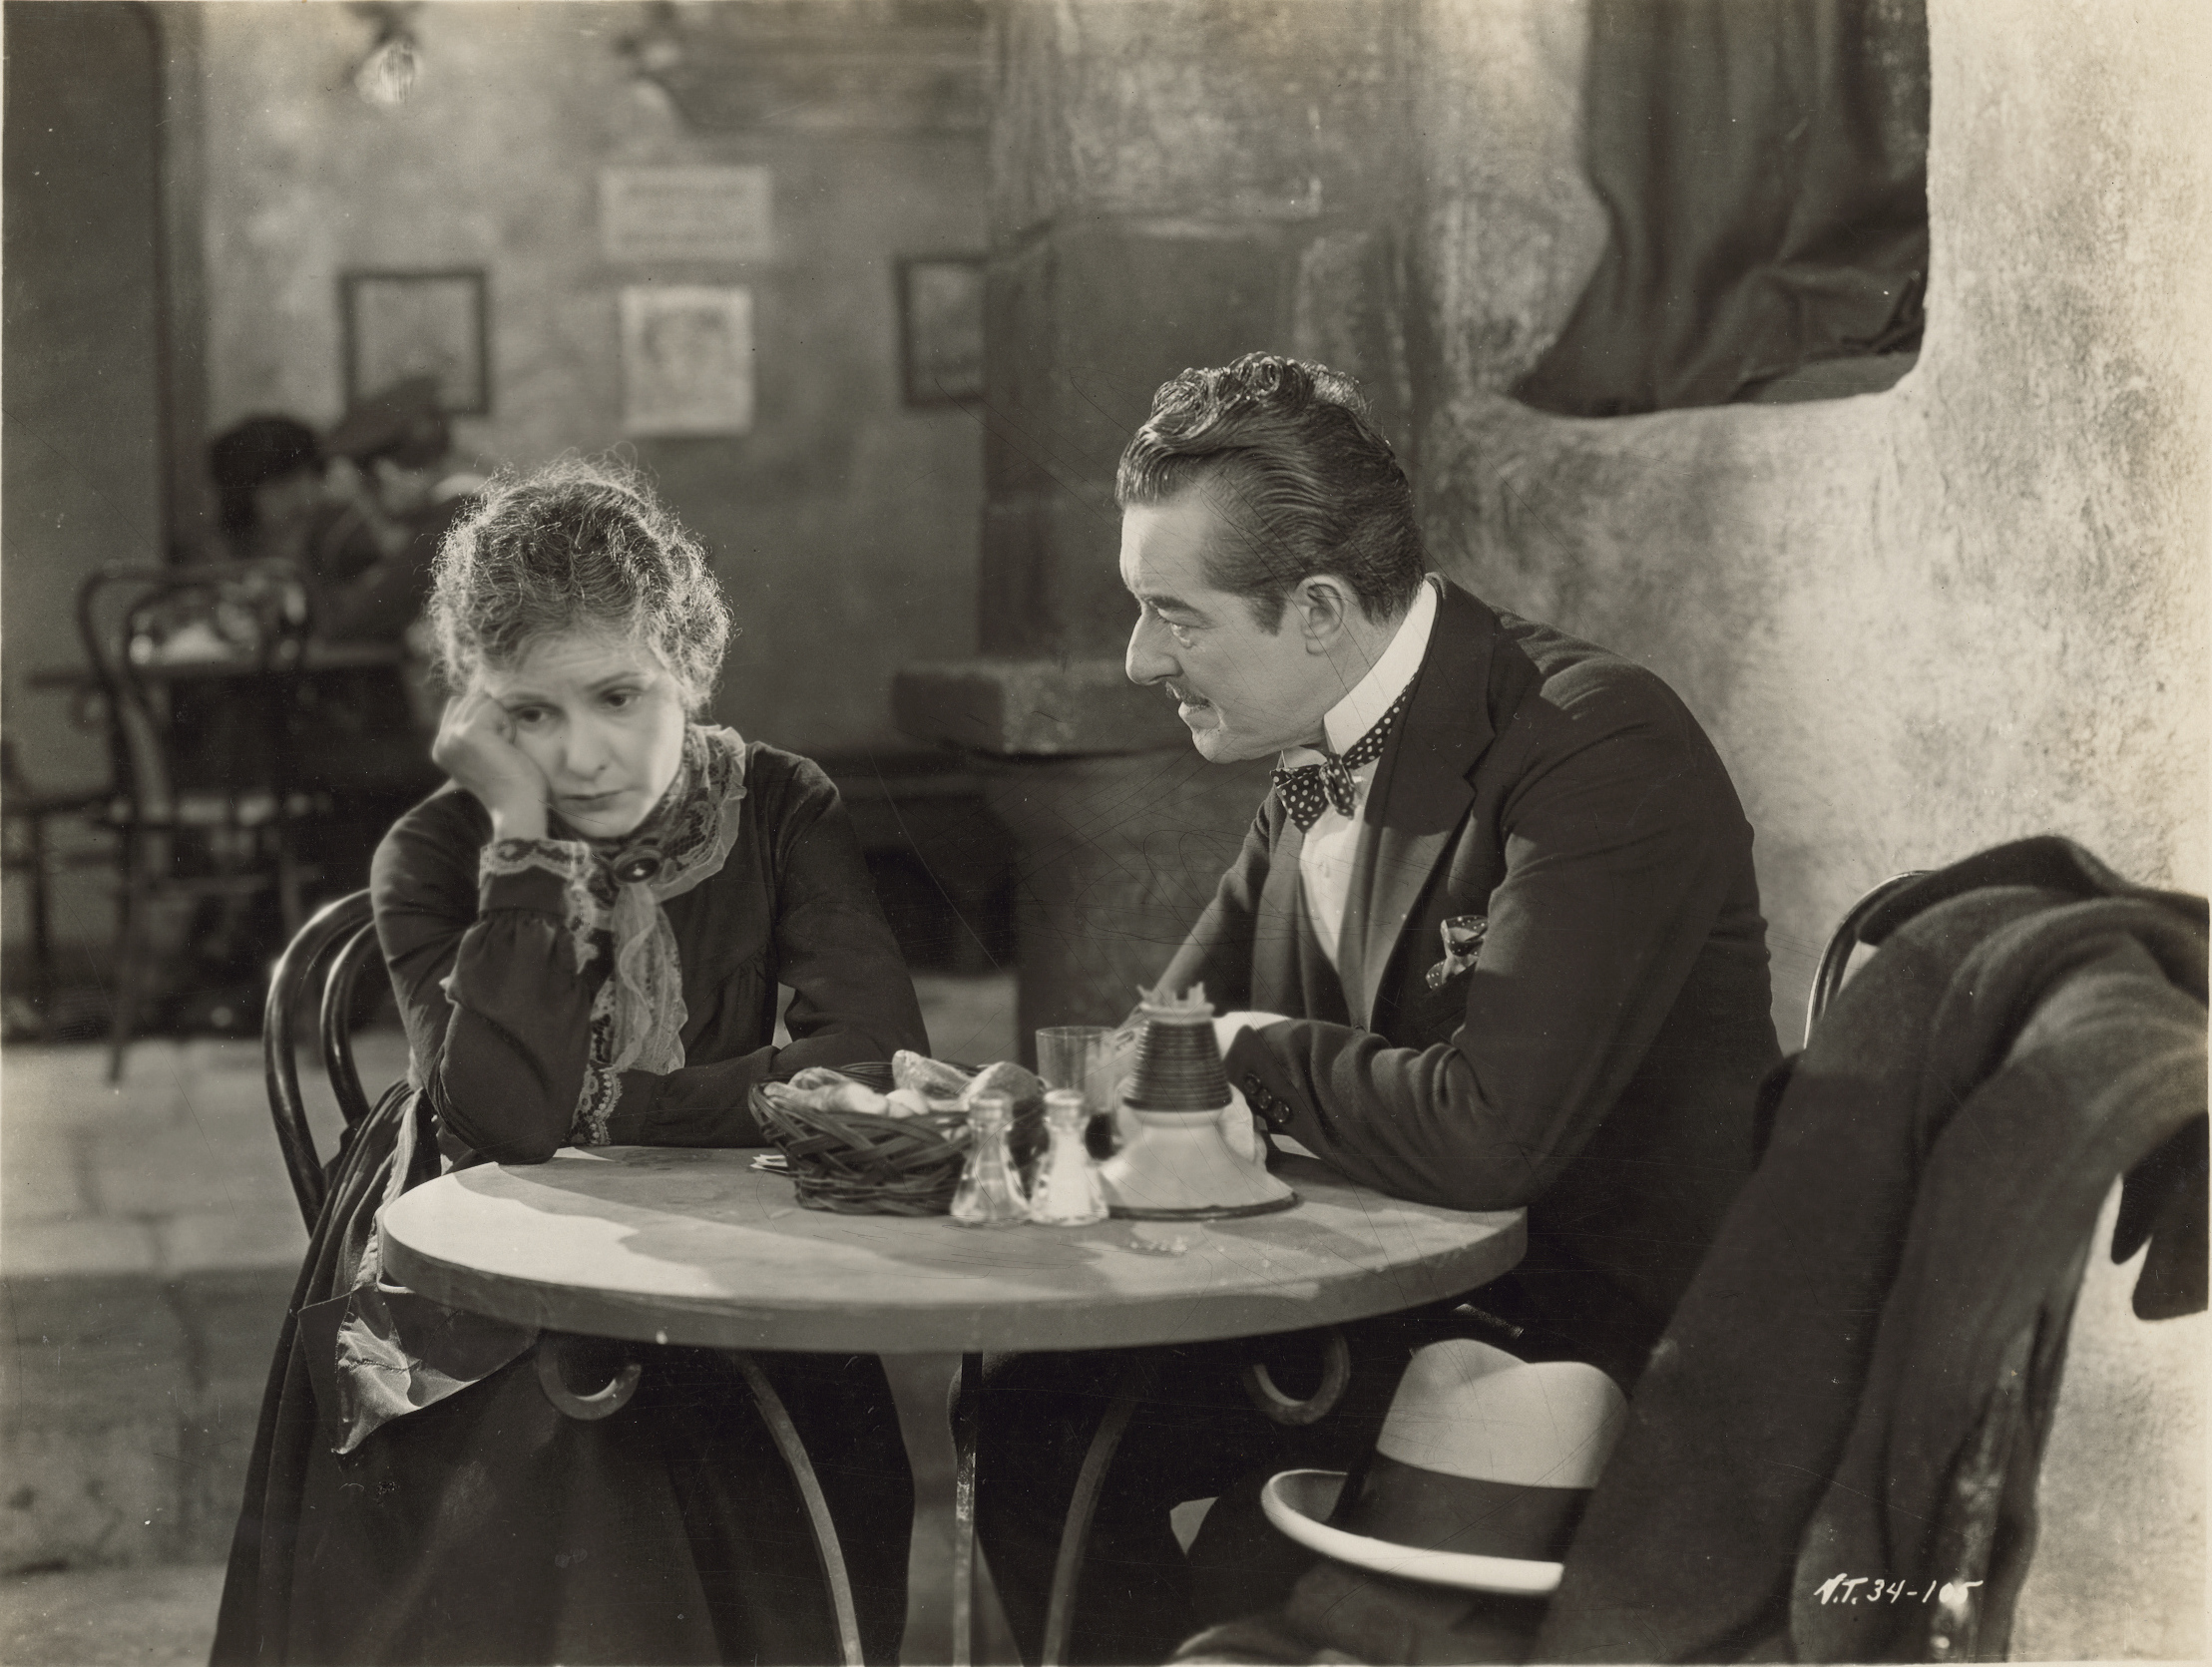 Le Giornate del Cinema Muto di Pordenone - martedì 4 ottobre prosegue la retrospettiva su Norma Talmadge